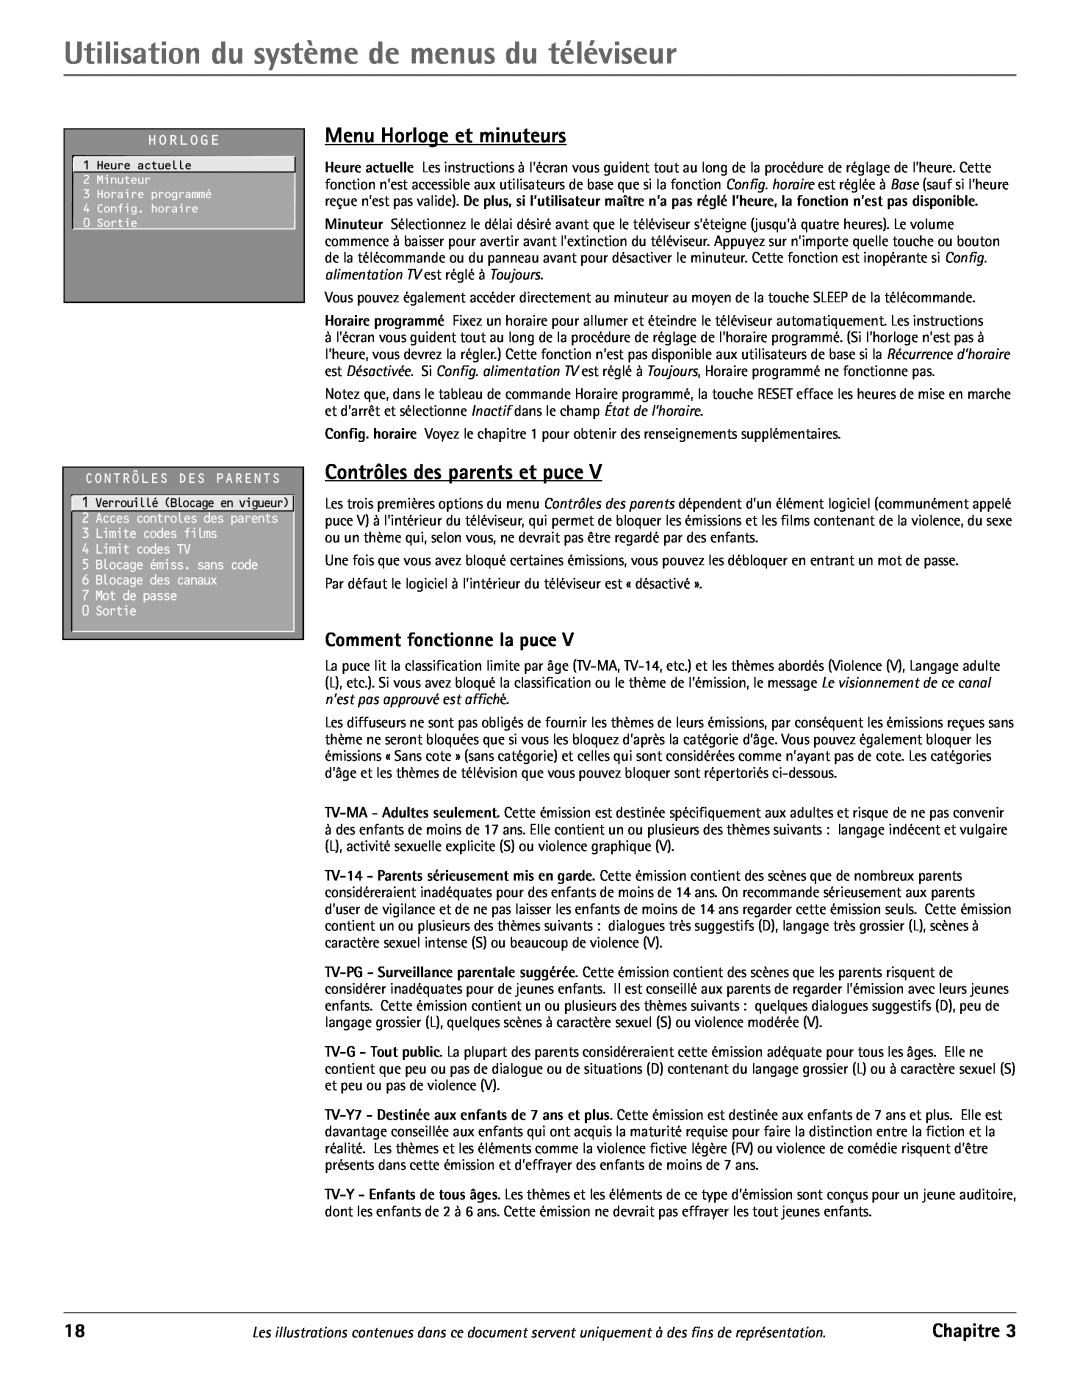 RCA J20542 manual Utilisation du systme de menus du tŽlŽviseur, Menu Horloge et minuteurs, Contrôles des parents et puce 